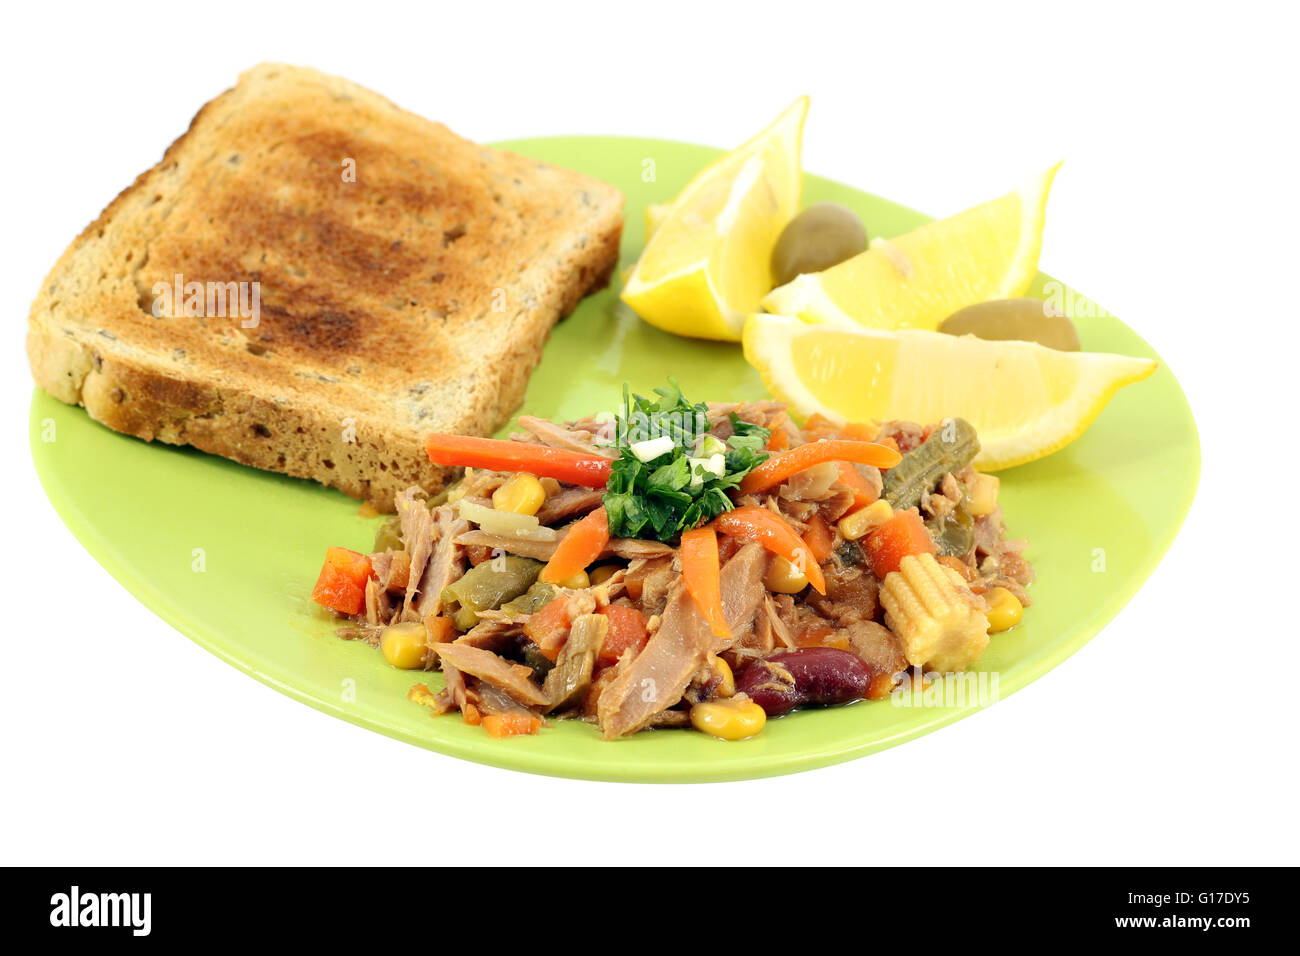 tuna fish with salad and lemon Stock Photo